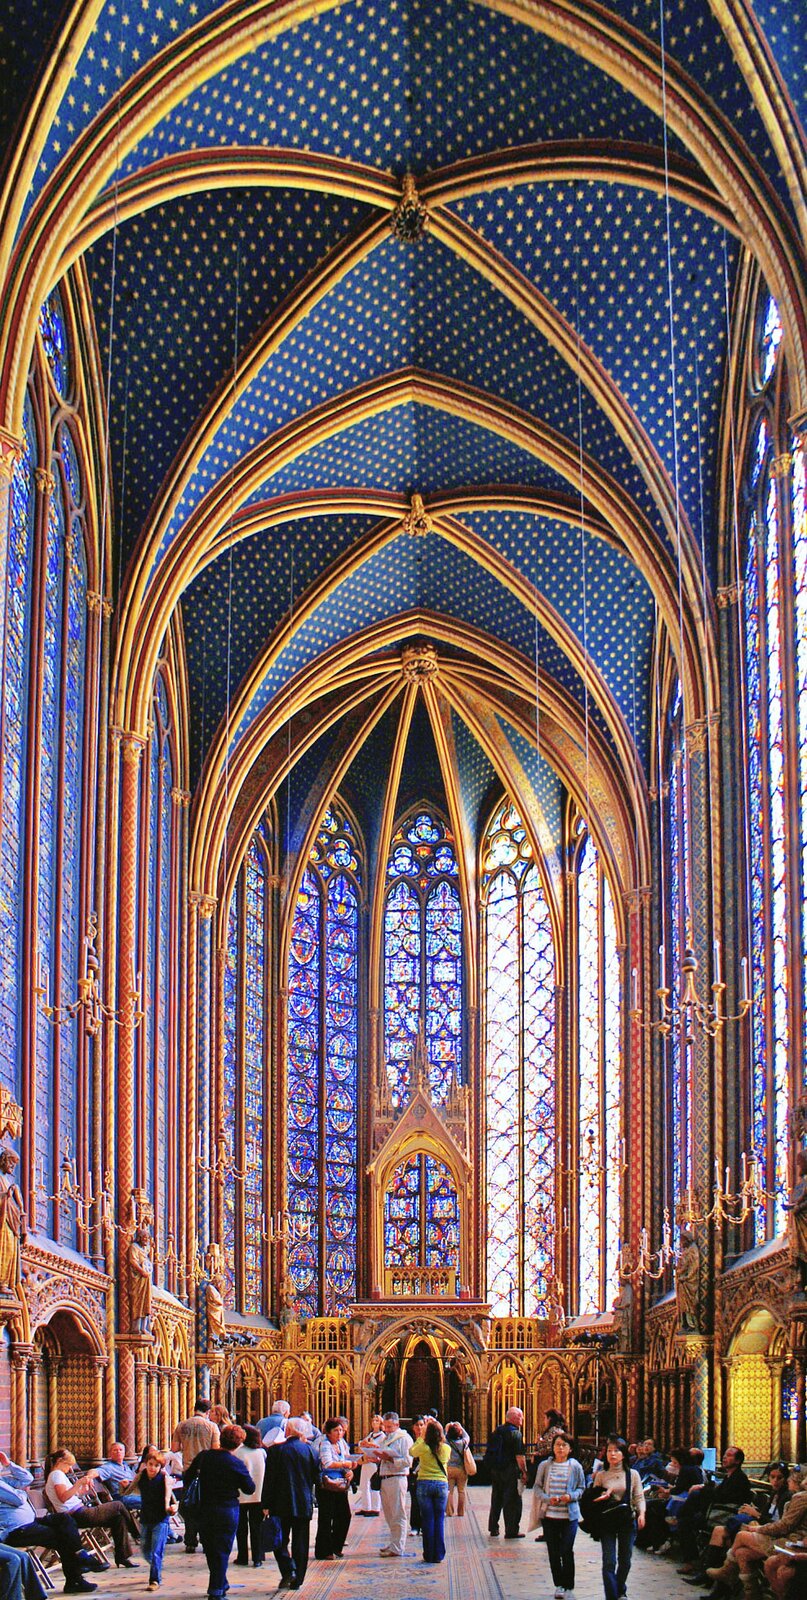 Ilustracja o kształcie pionowego prostokąta przedstawia wnętrze górnej kaplicy w Saint Chapelle. Na ilustracji widoczna jest bogato zdobiona polichromia sklepienia, dekorowanego gwiazdami na niebieskim tle. Ściany wypełnione są smukłymi, ostro zakończonymi oknami witrażowymi. Wewnątrz znajdują się wierni.  